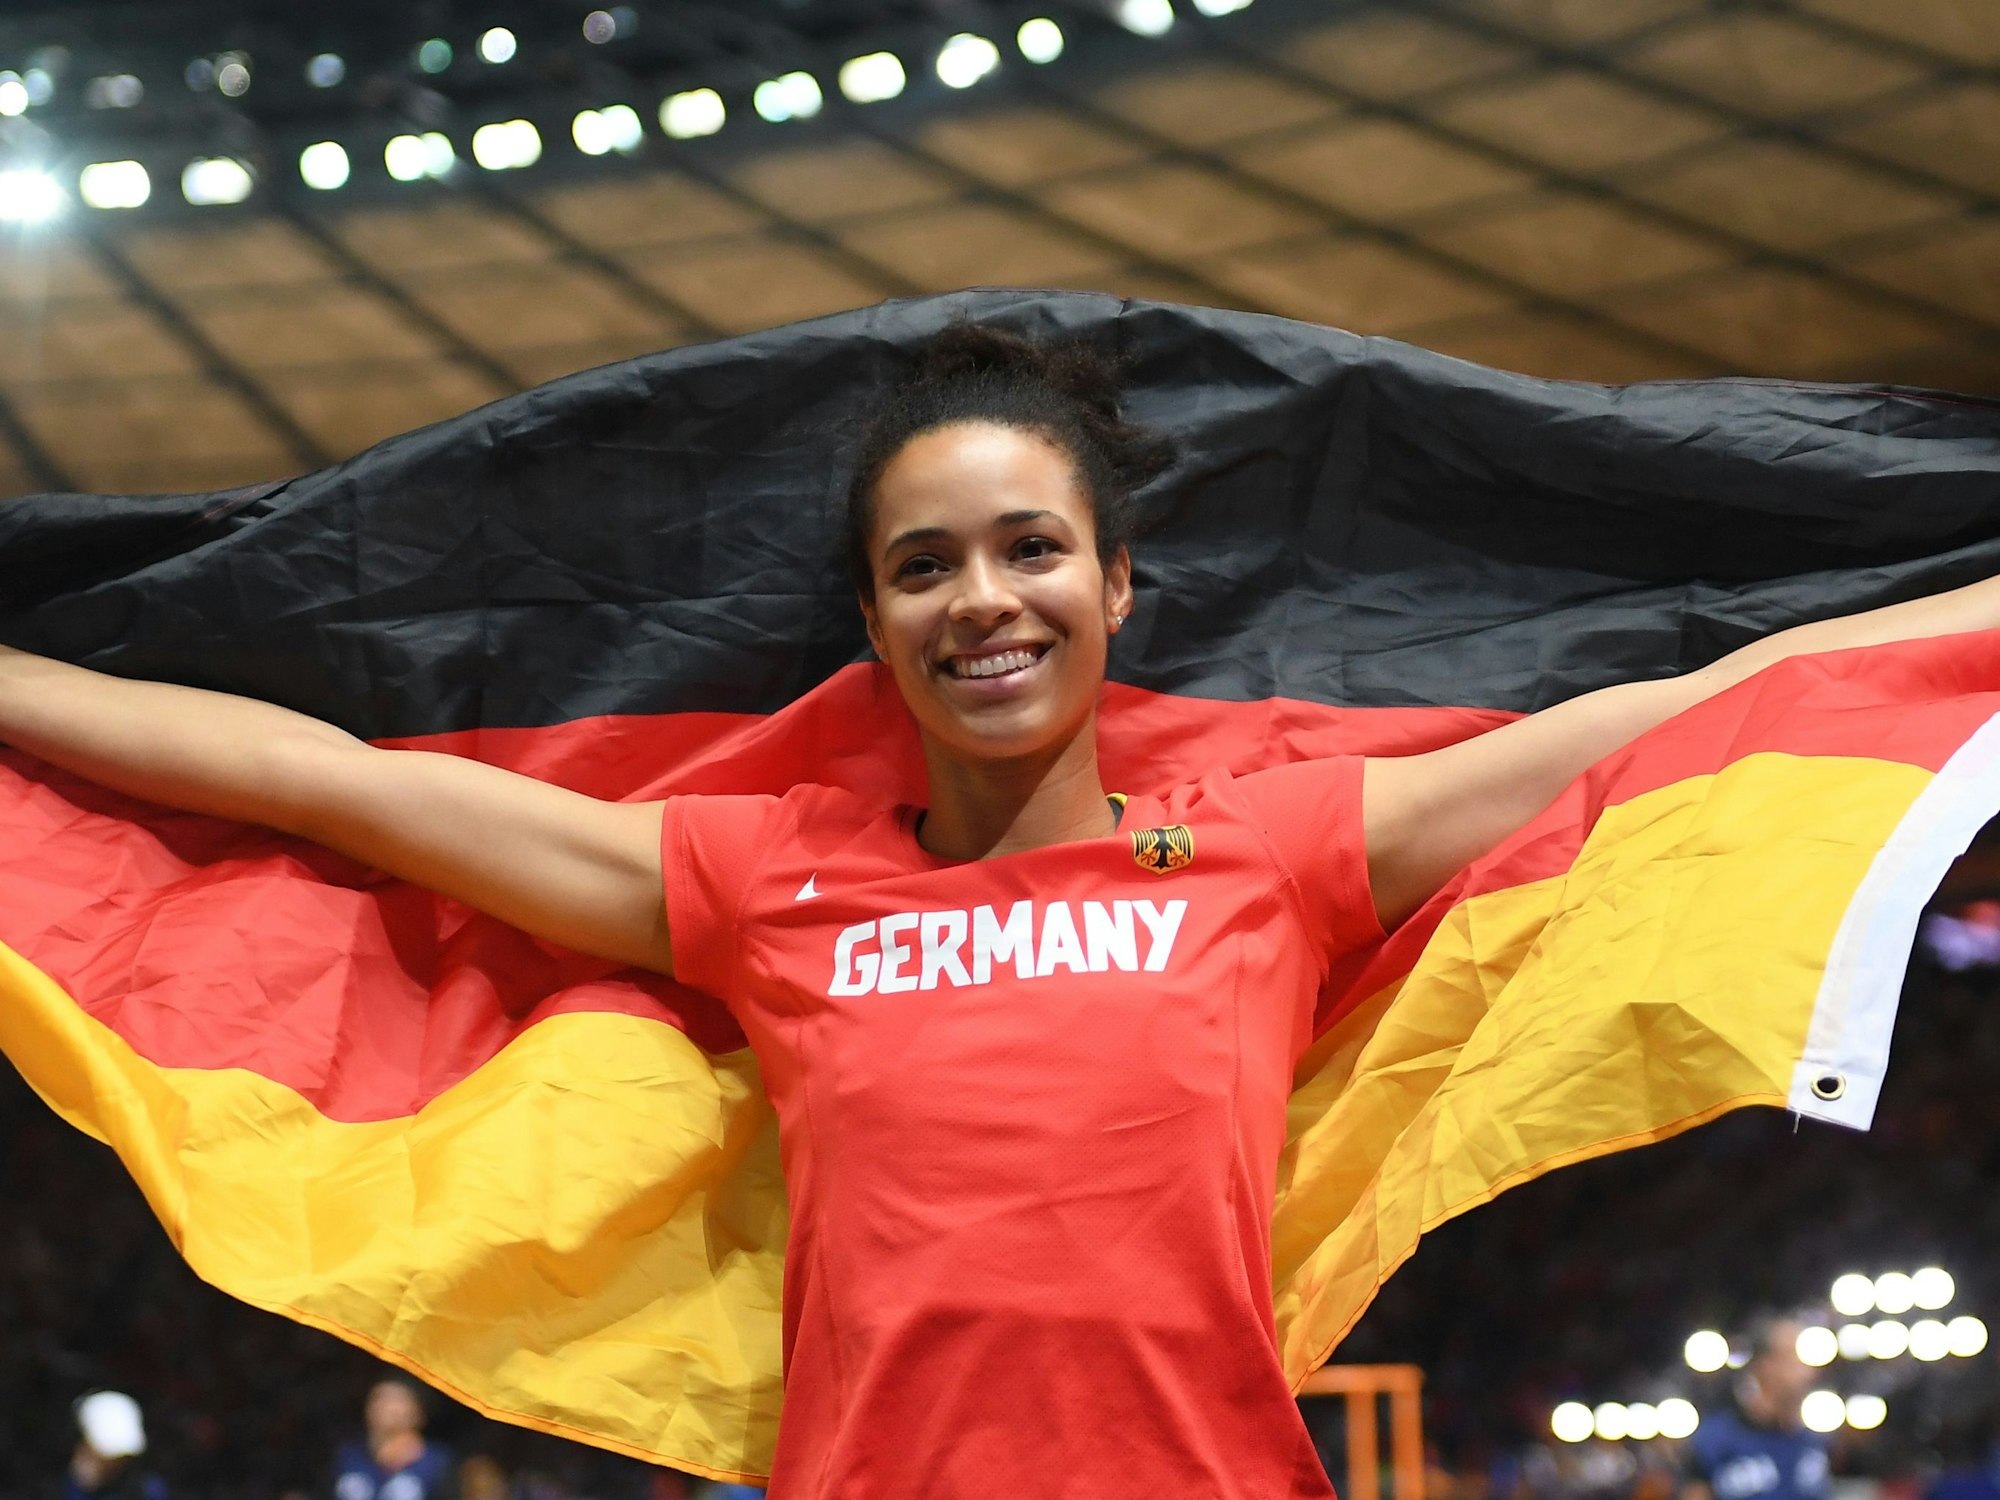 Marie-Laurence Jungfleisch aus Deutschland jubelt mit einer Deutschland-Fahne in den Händen.